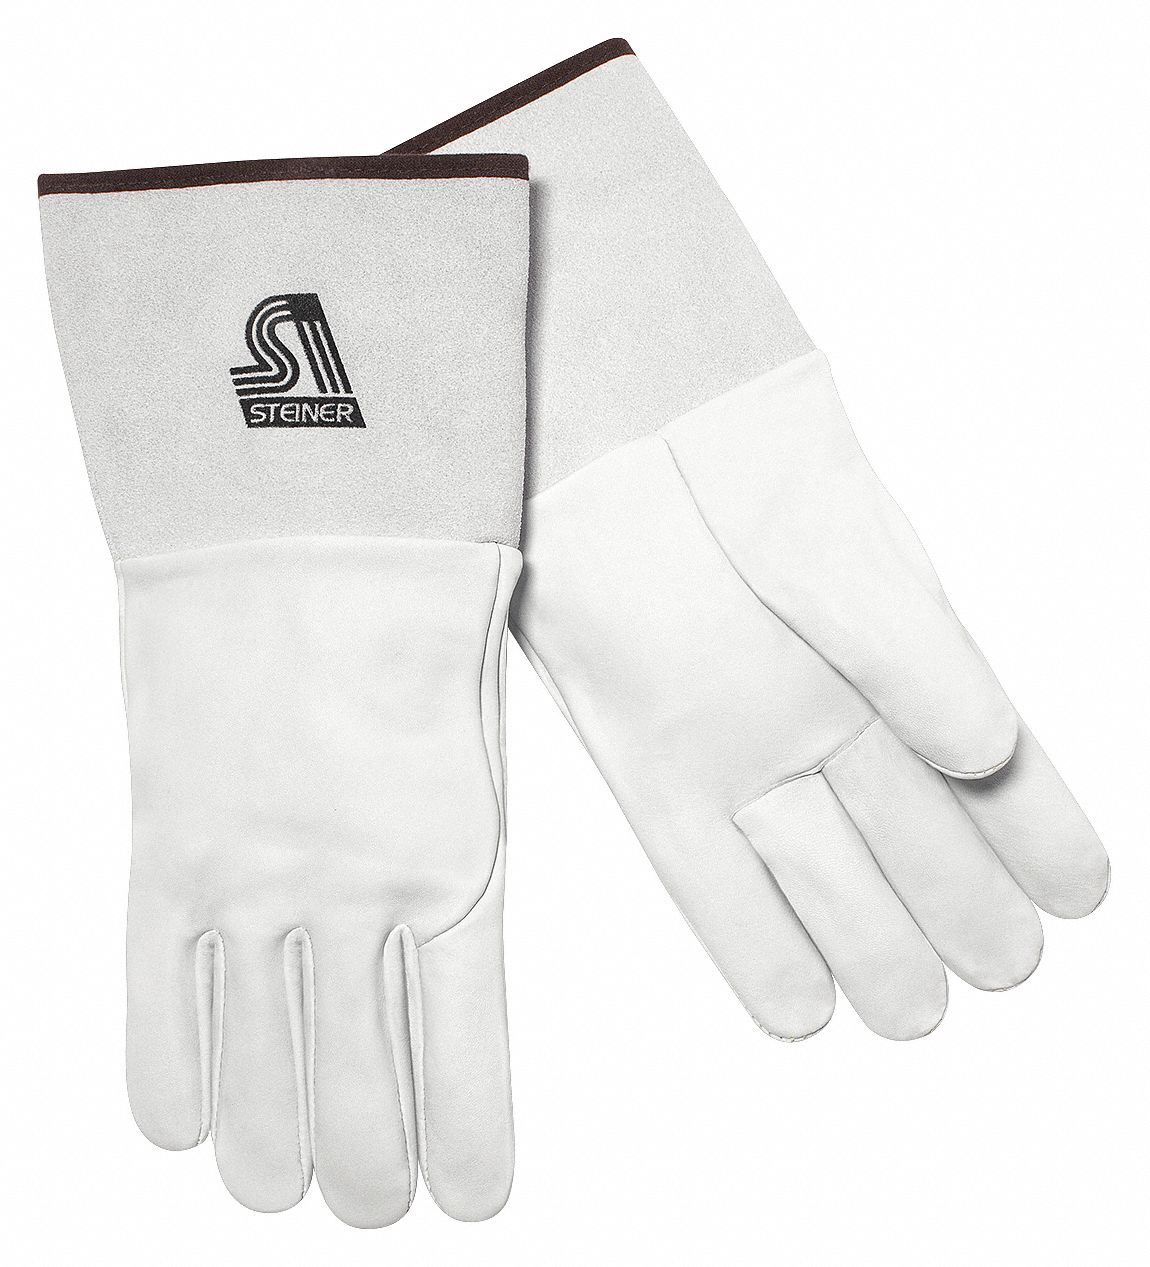 Premium Grain Kidskin Unlined 4-Inch Cuff Extra Large 0266X Steiner 0266-X SPS TIG Gloves 